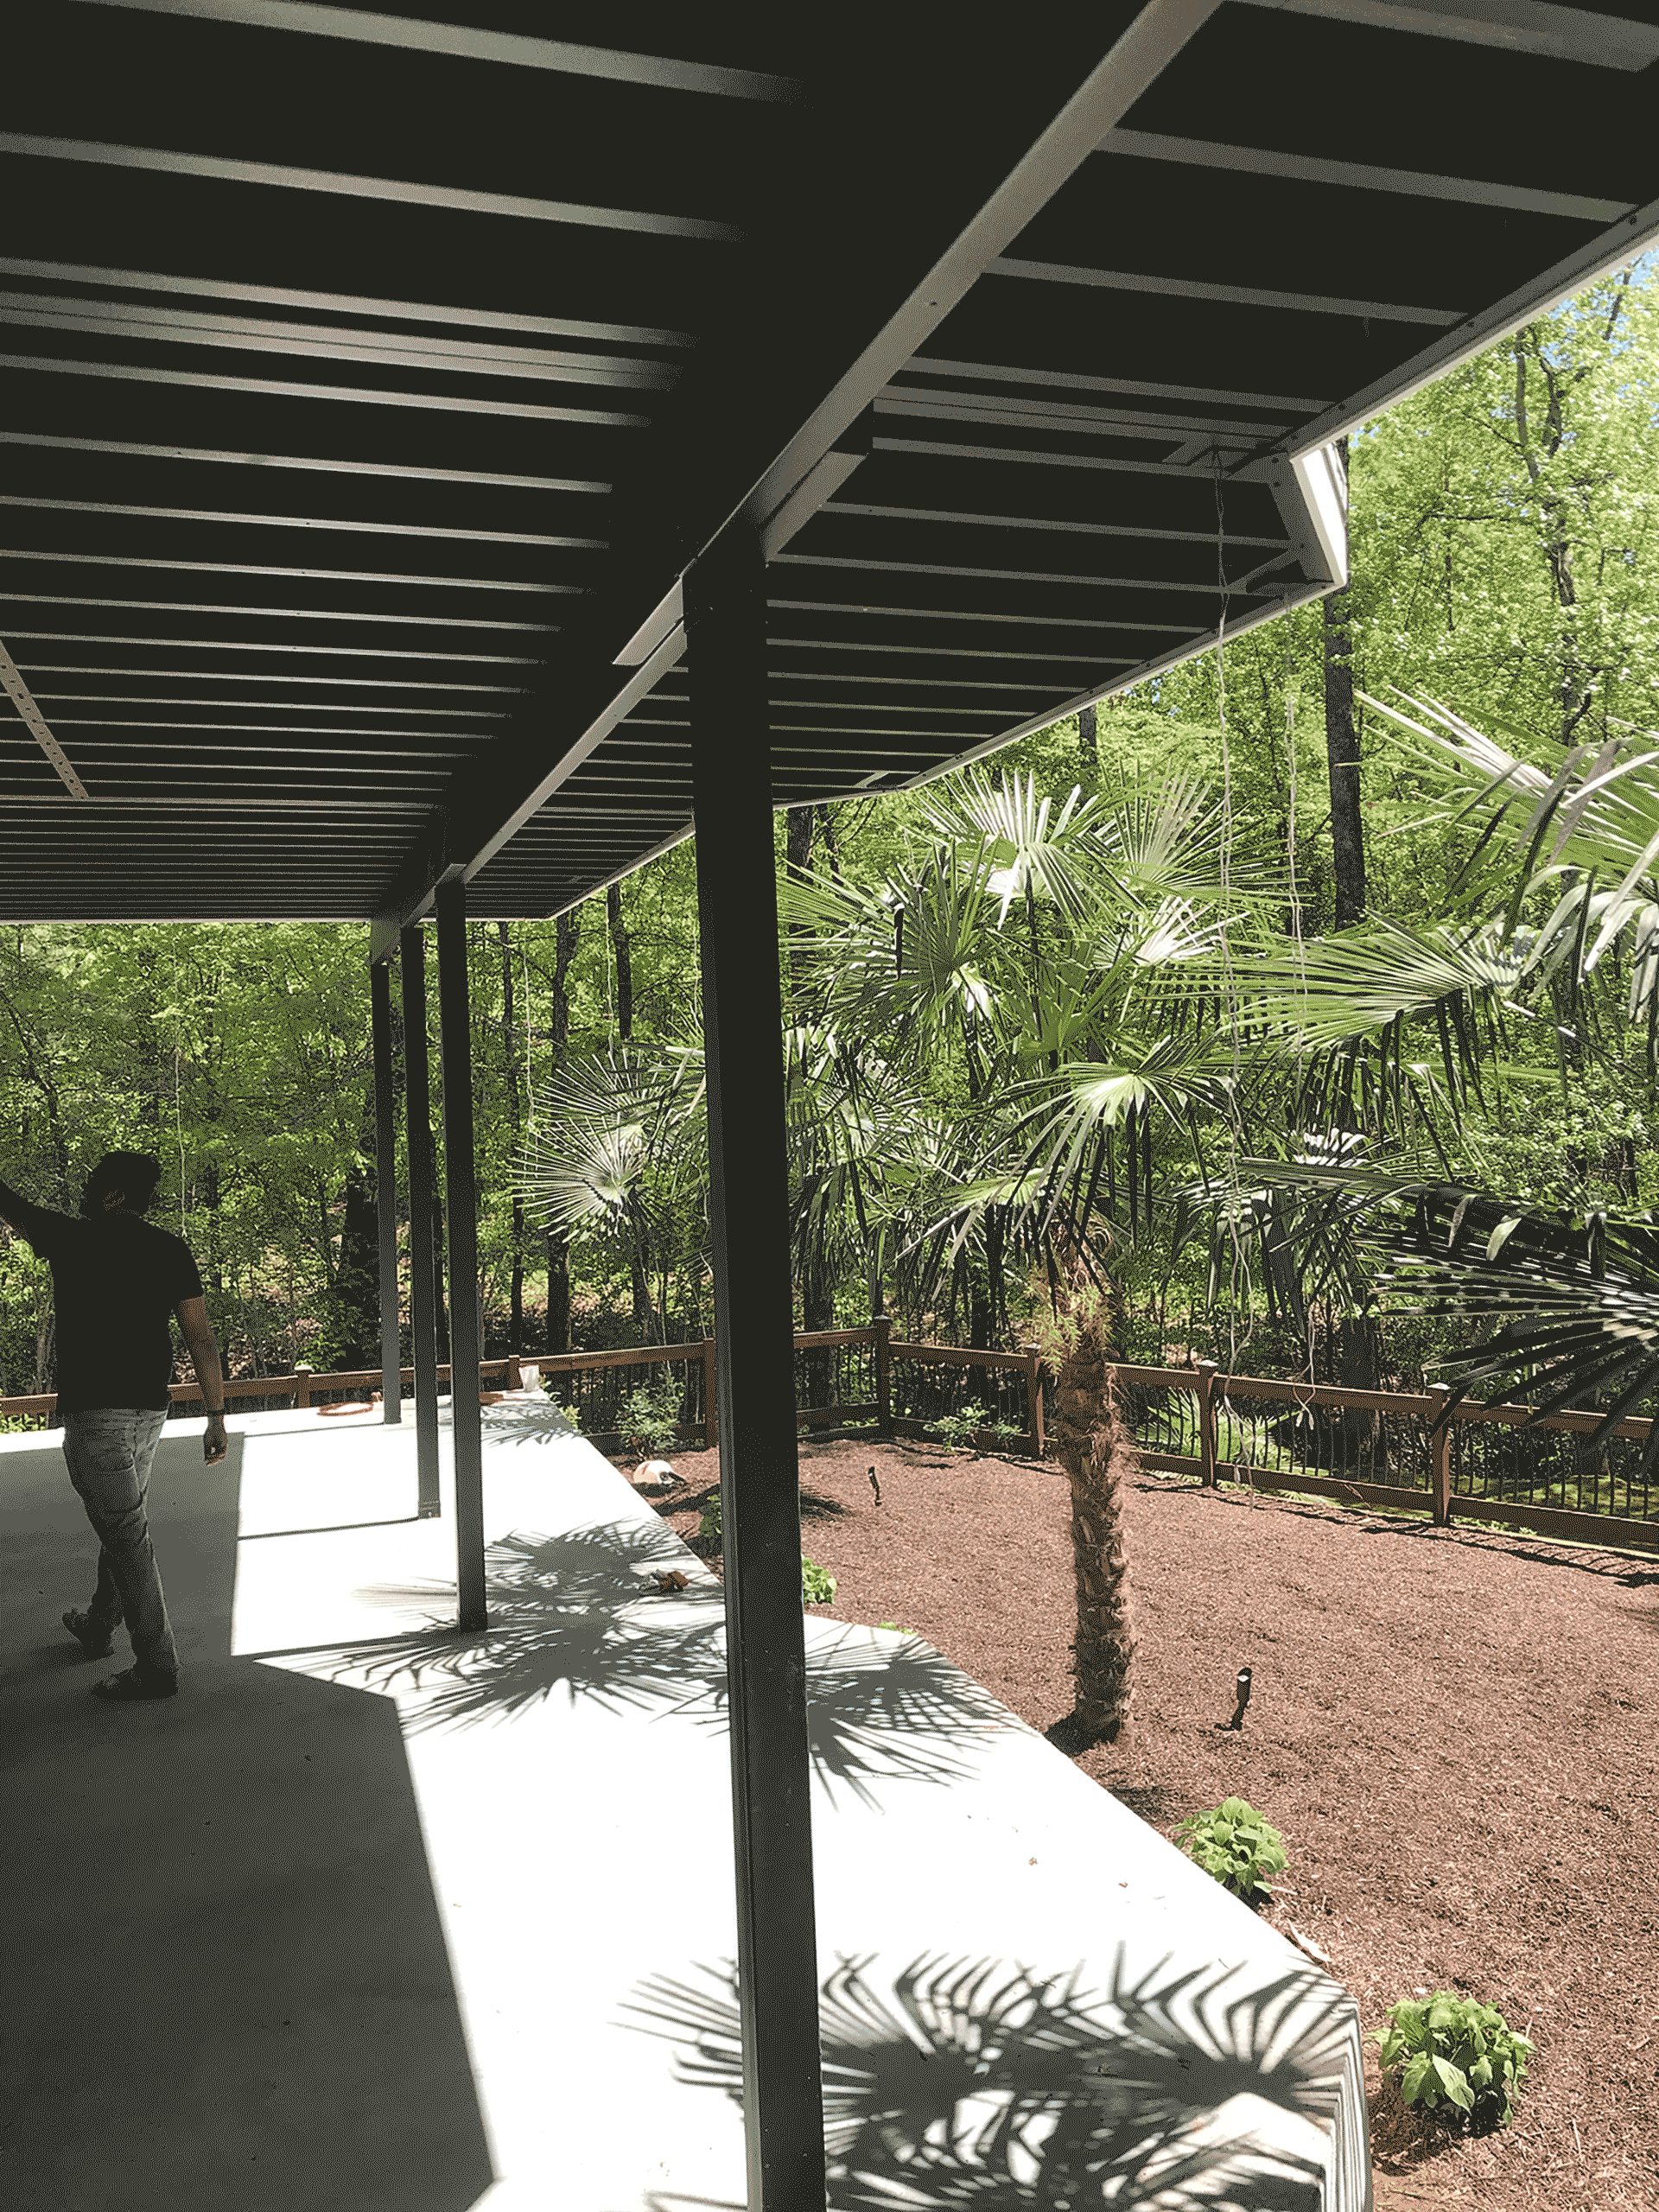 Underneath black steel deck framing with man walking towards tropical greenery.